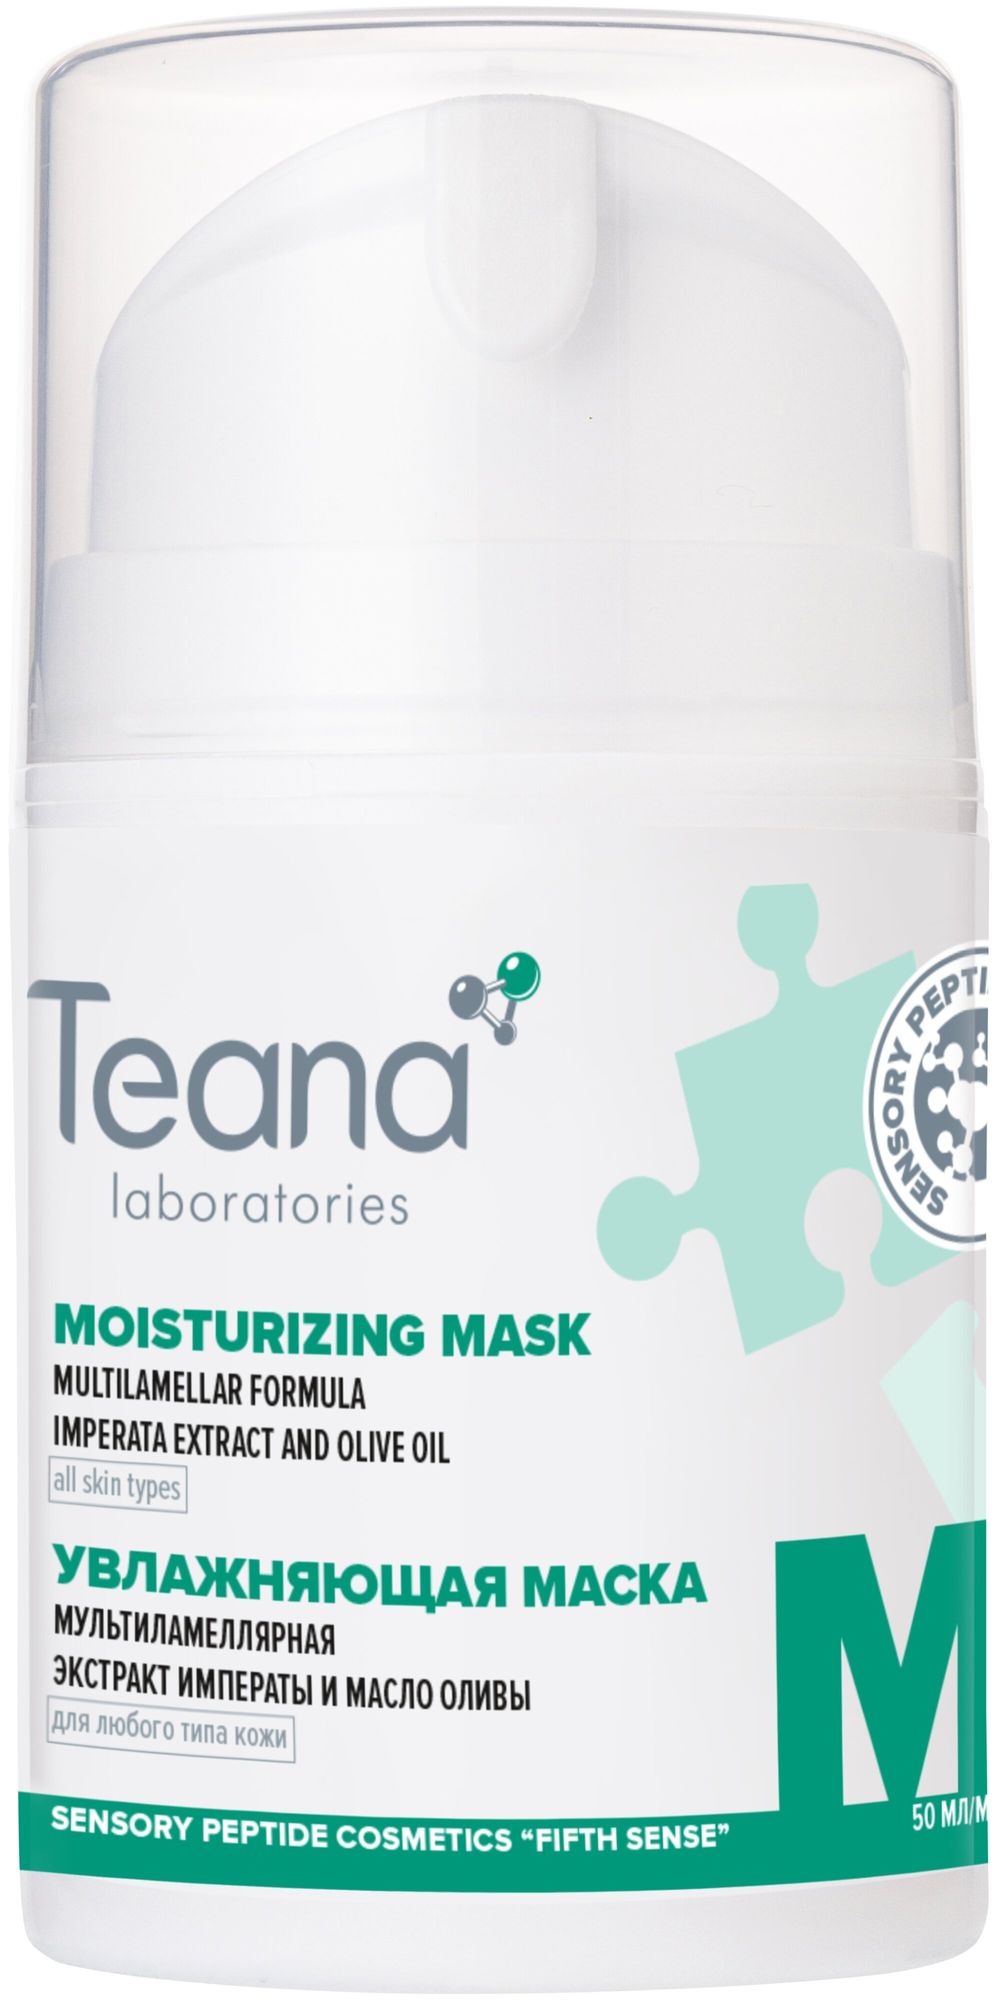 Увлажняющая мультиламеллярная маска Teana с экстрактом Императы- диспенсер 50мл